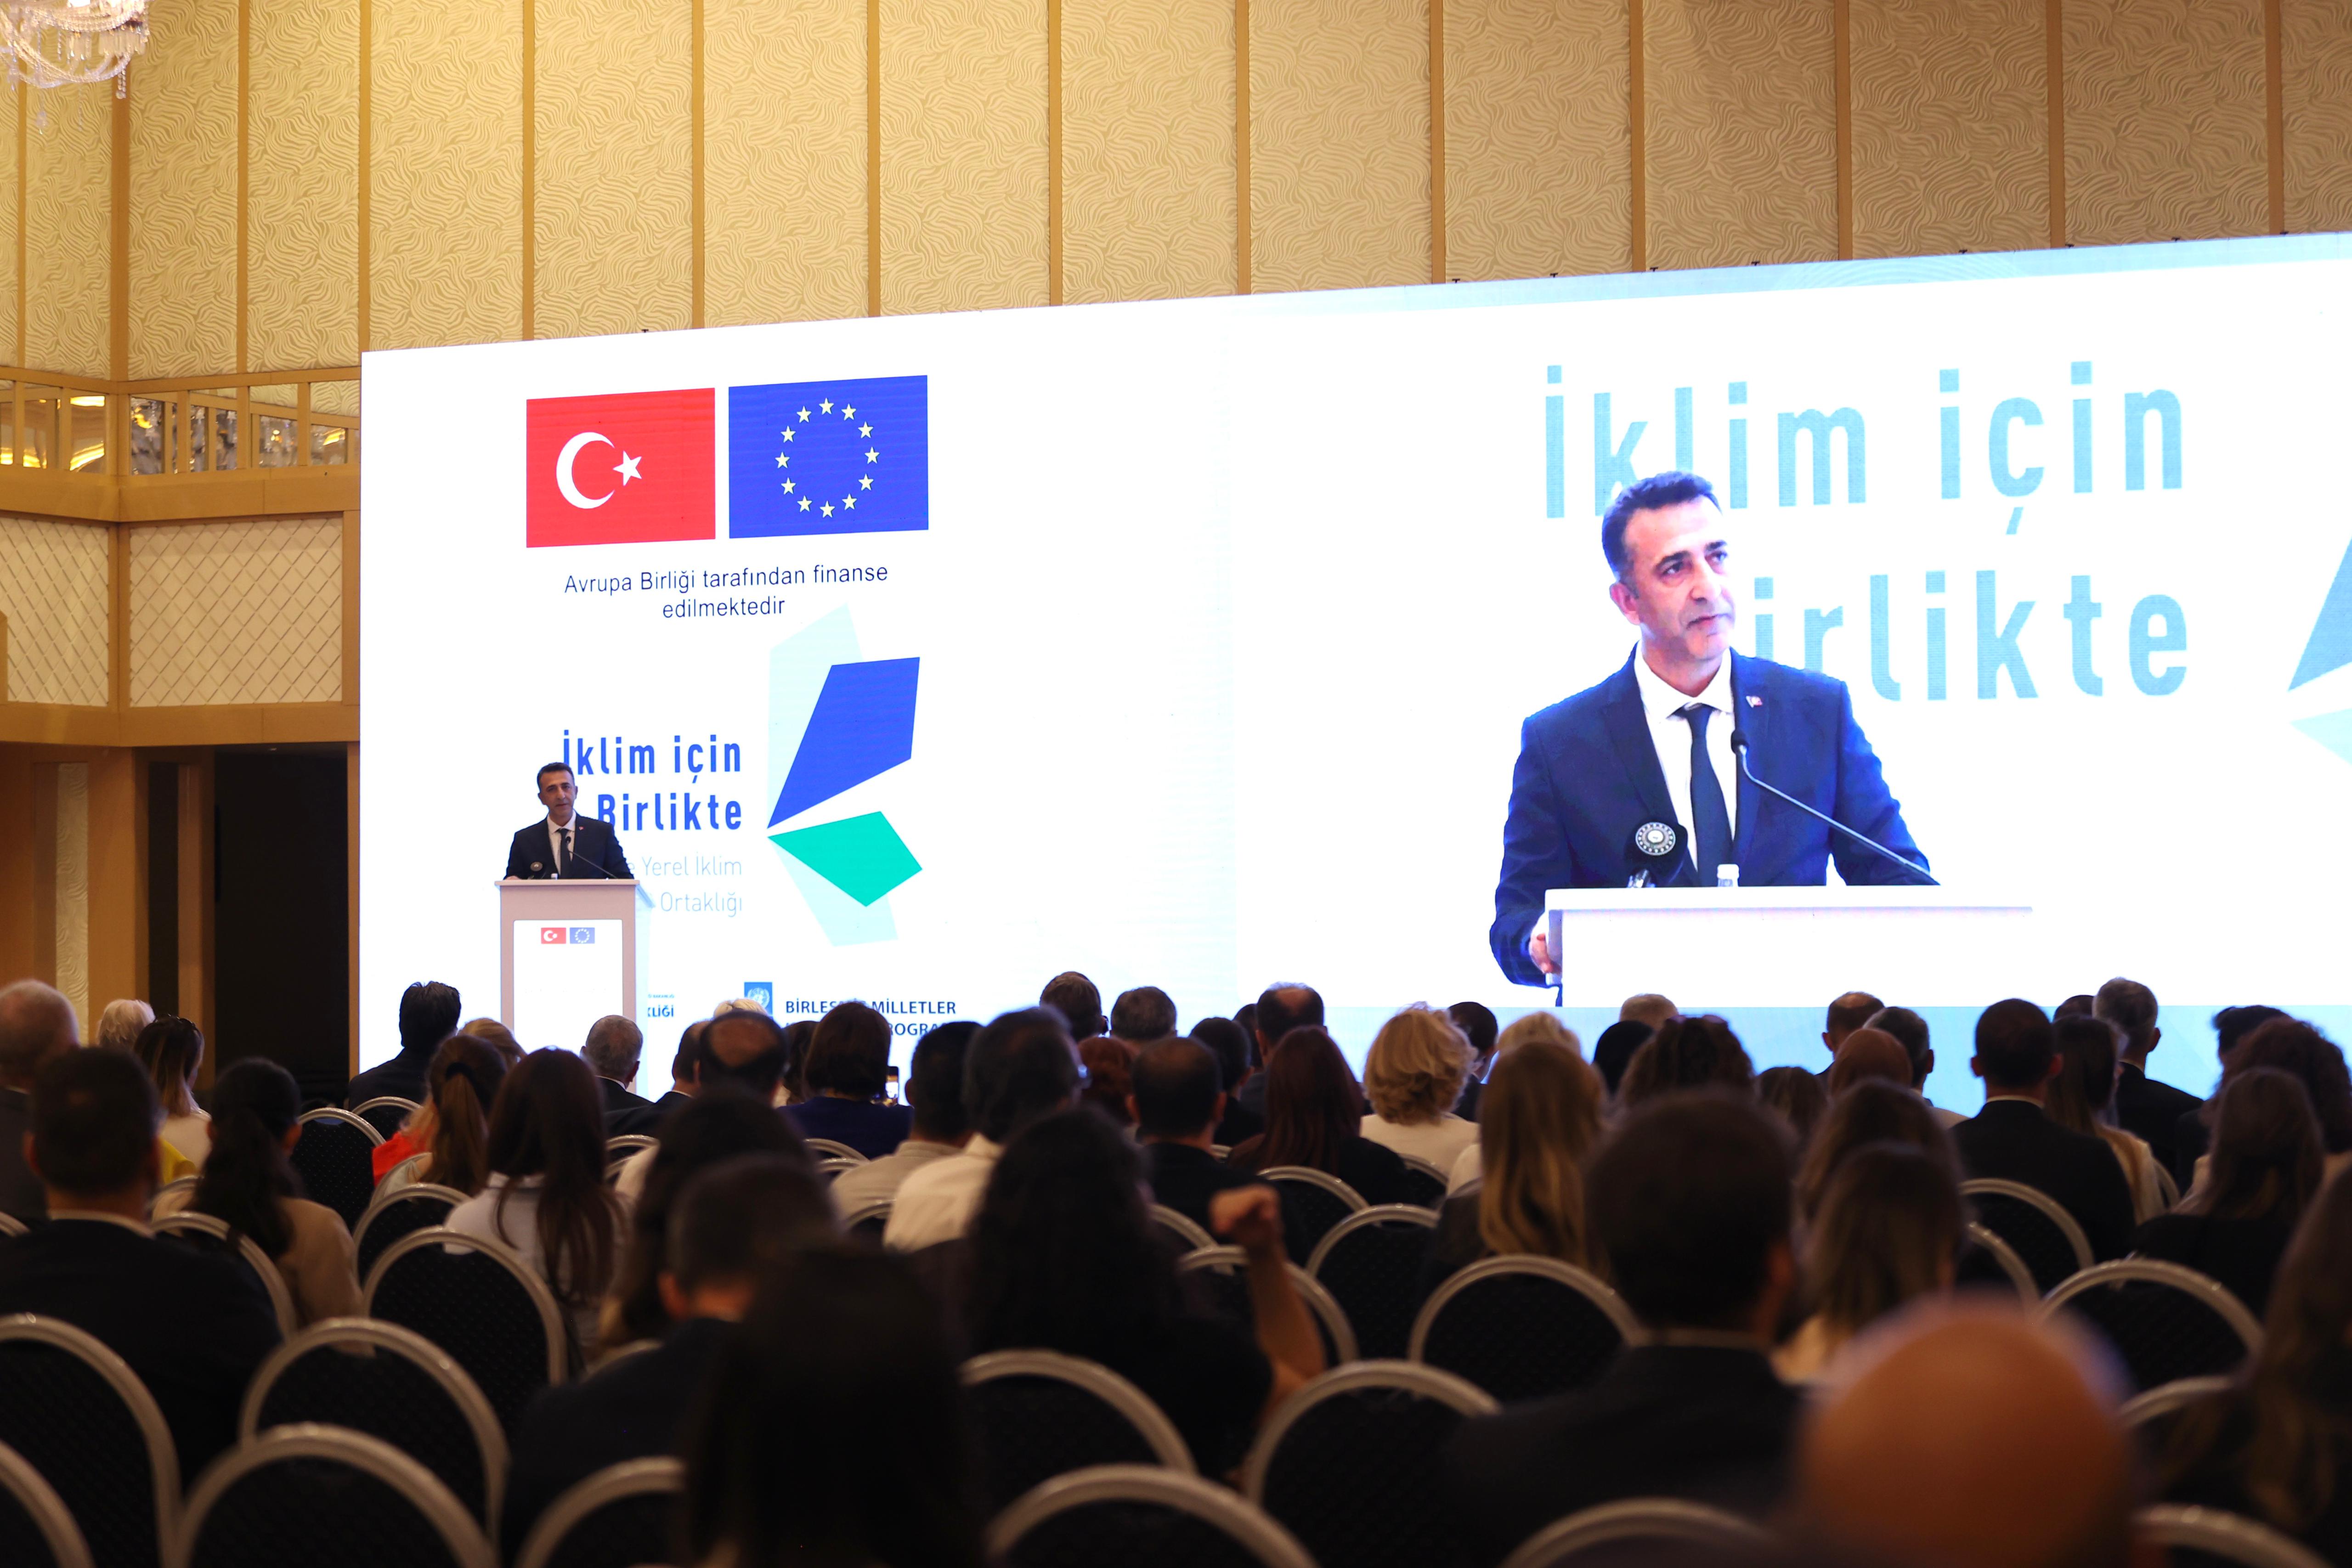 Türkiye’nin Yerel İklim Eylemi İçin AB Ortaklığı Projesi Açılış Toplantısı gerçekleştirildi